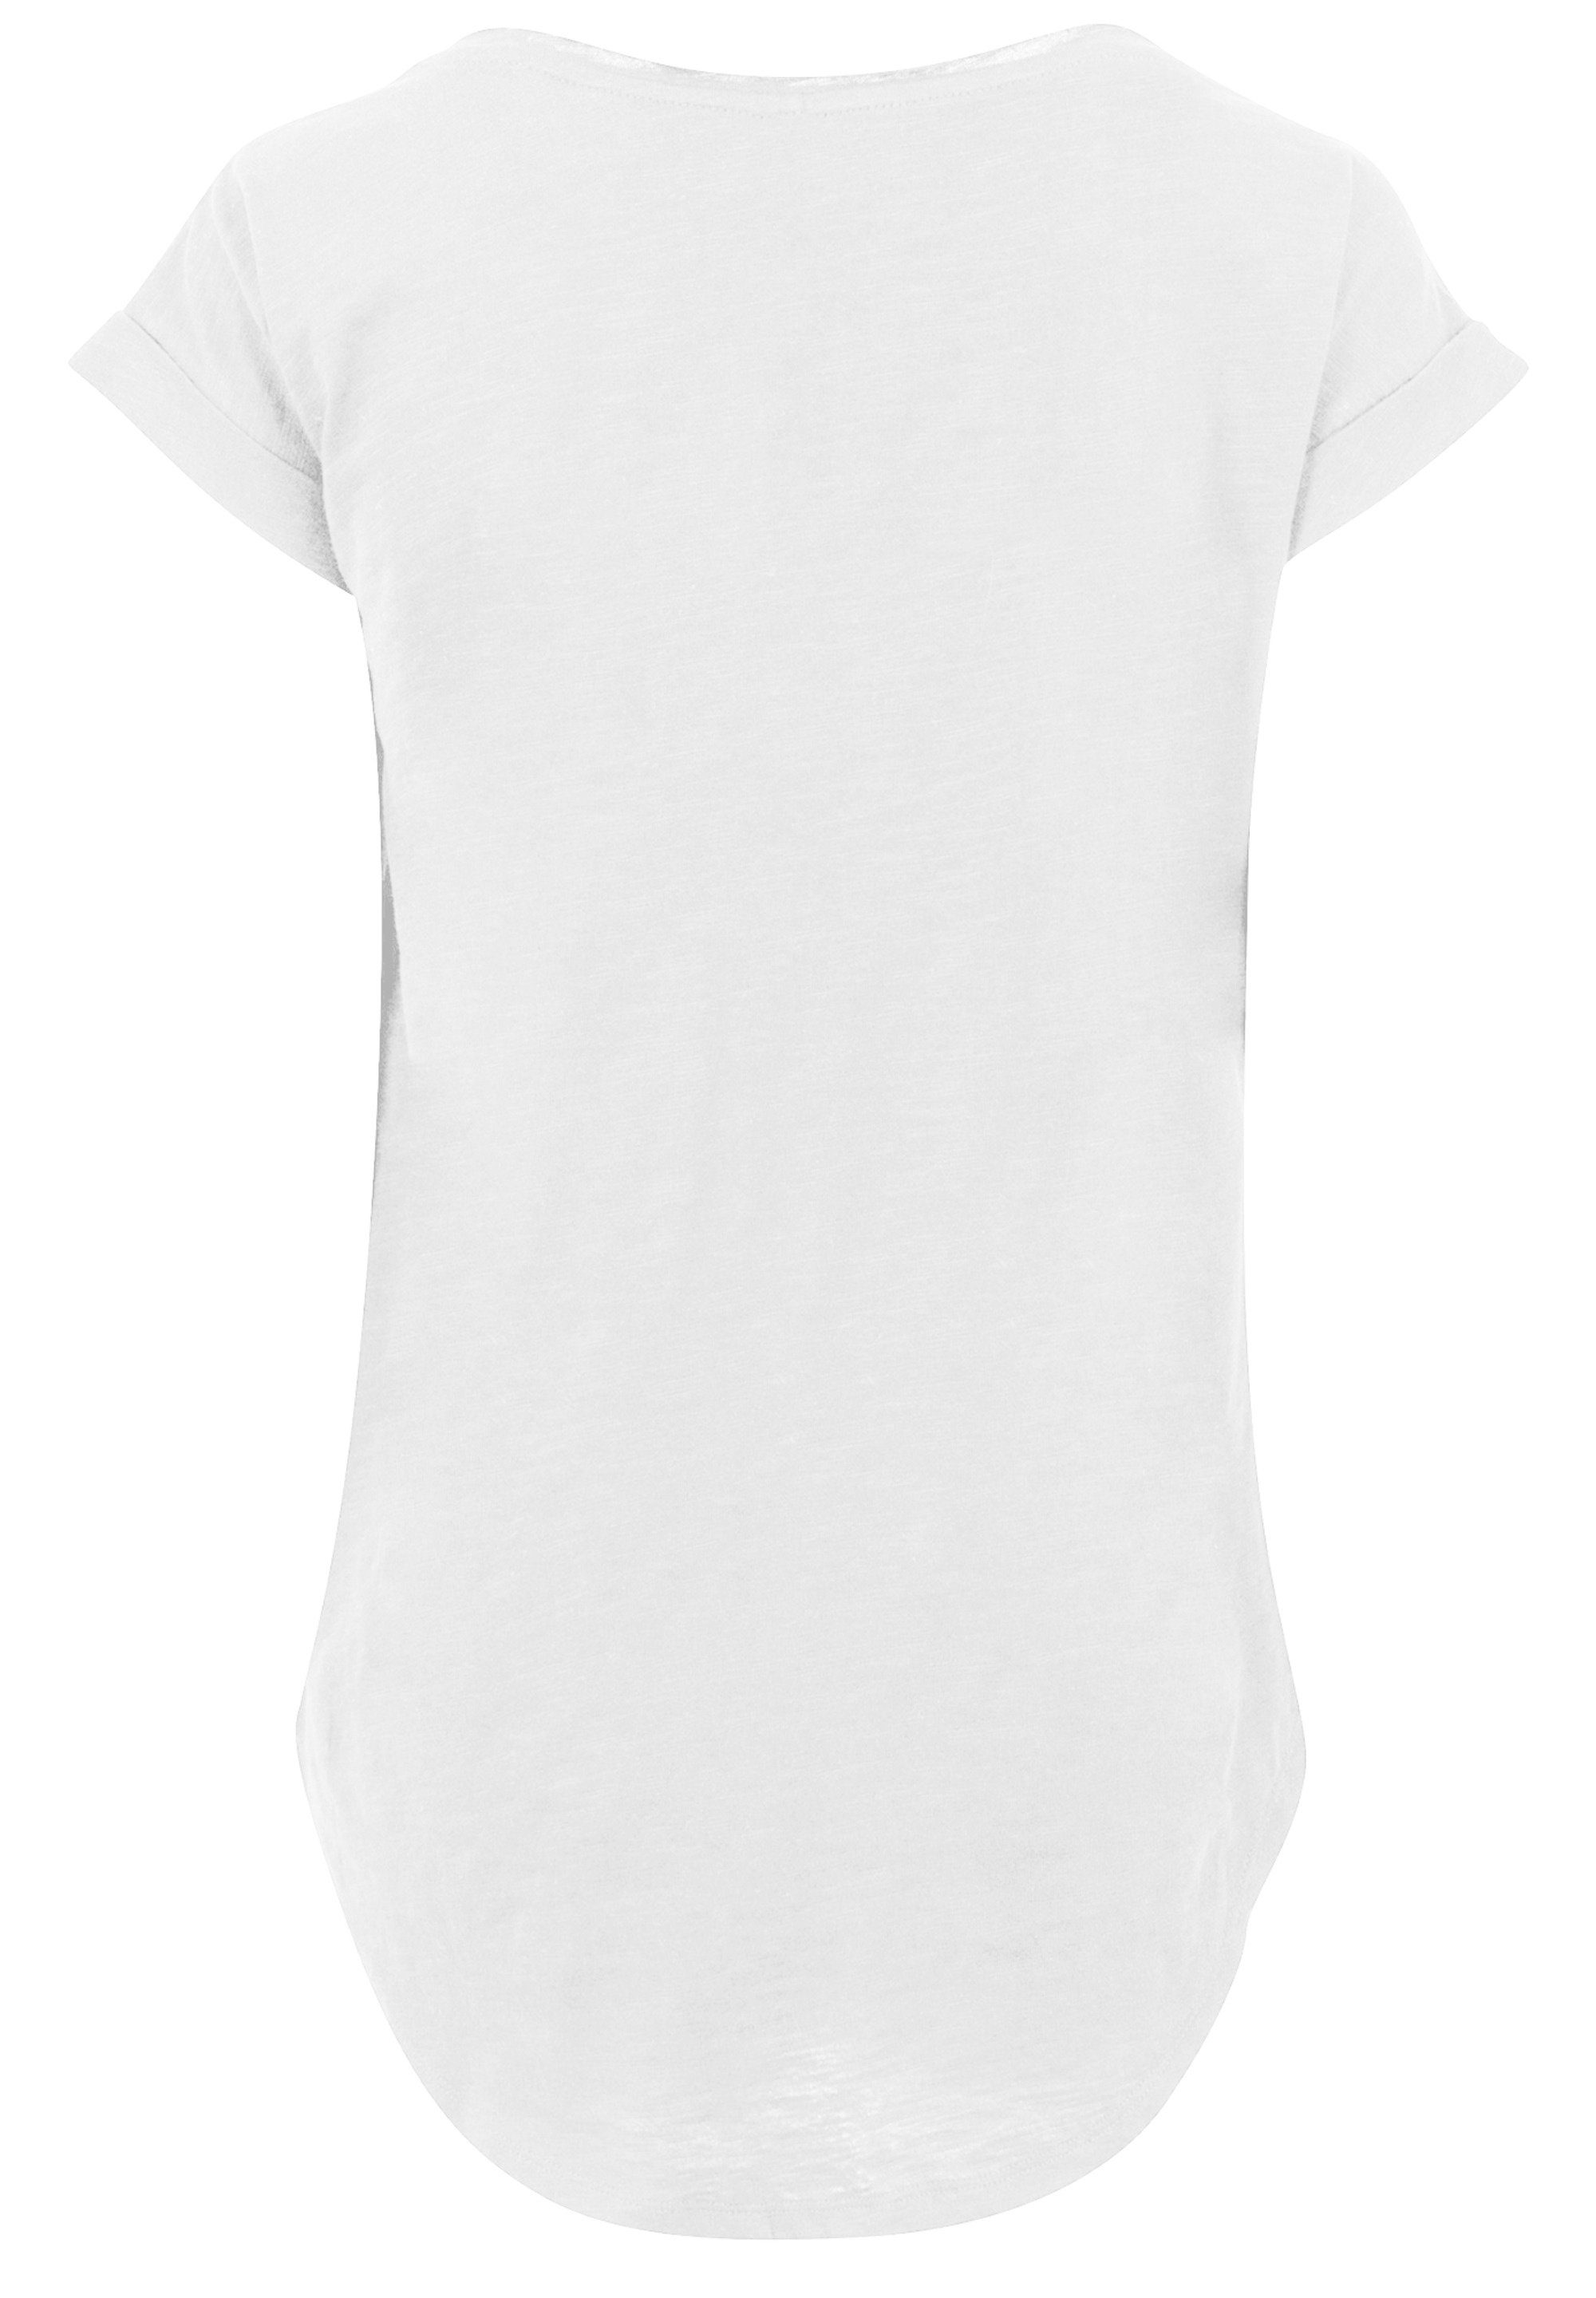 F4NT4STIC T-Shirt Phantastische Tierwesen Chibi Newt Print, Hinten extra  lang geschnittenes Damen T-Shirt